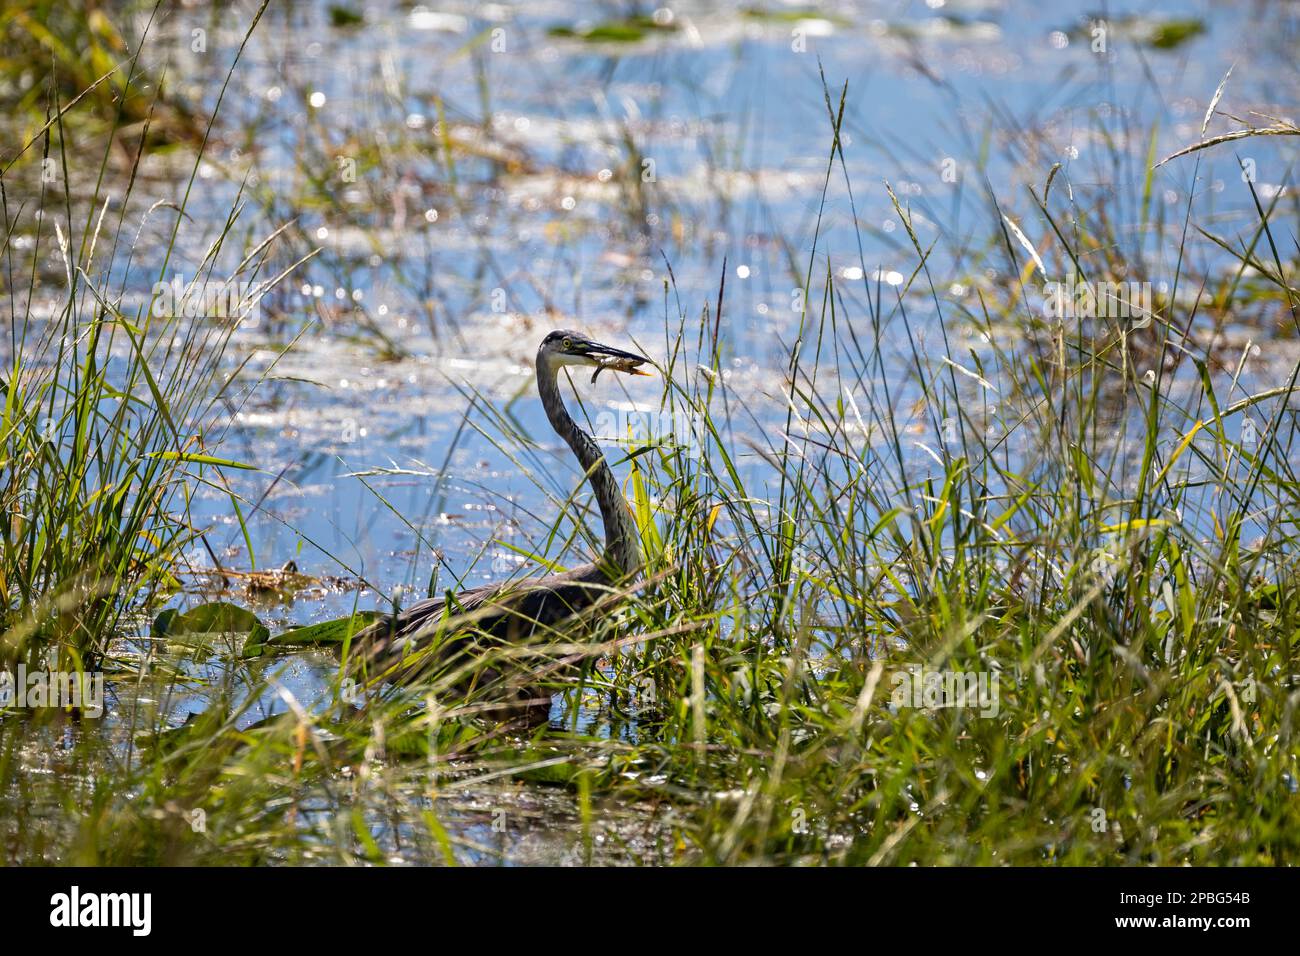 Heron catches sunfish in marsh wetland lake Stock Photo